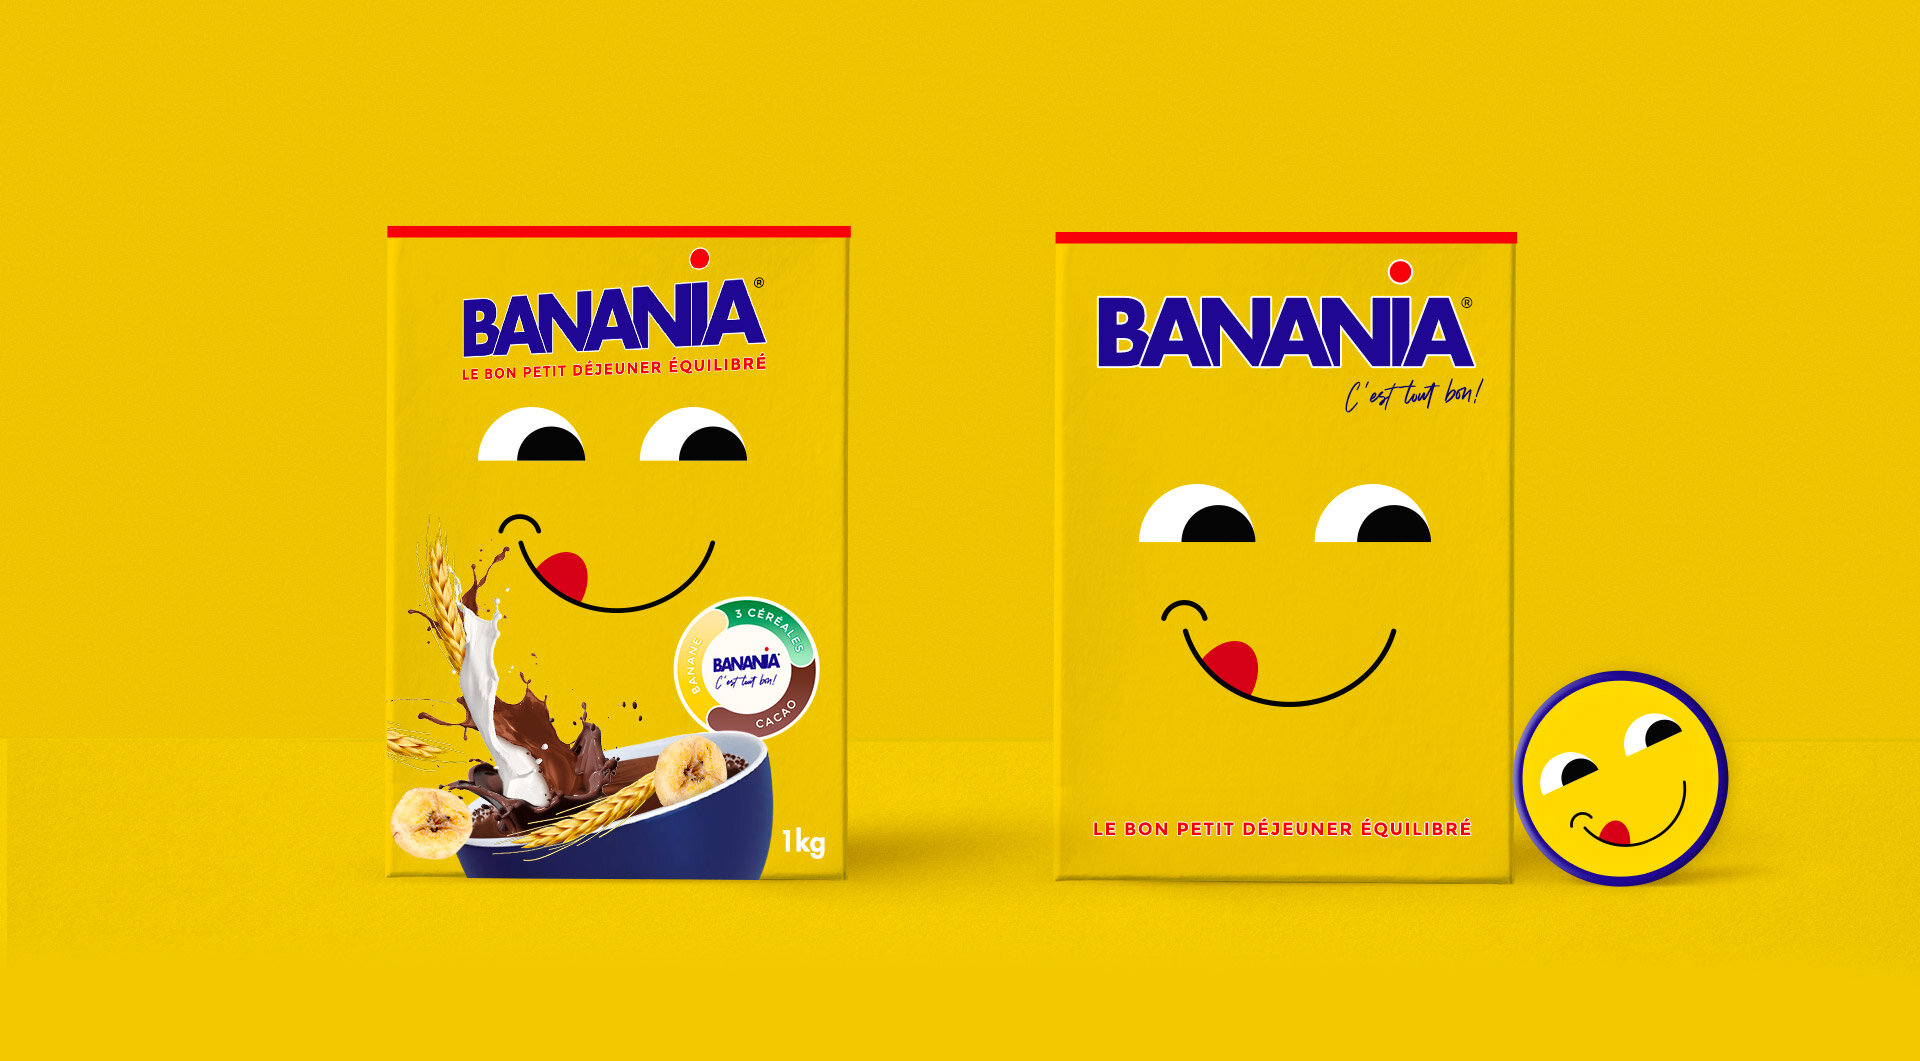 Banania original - 1 kg